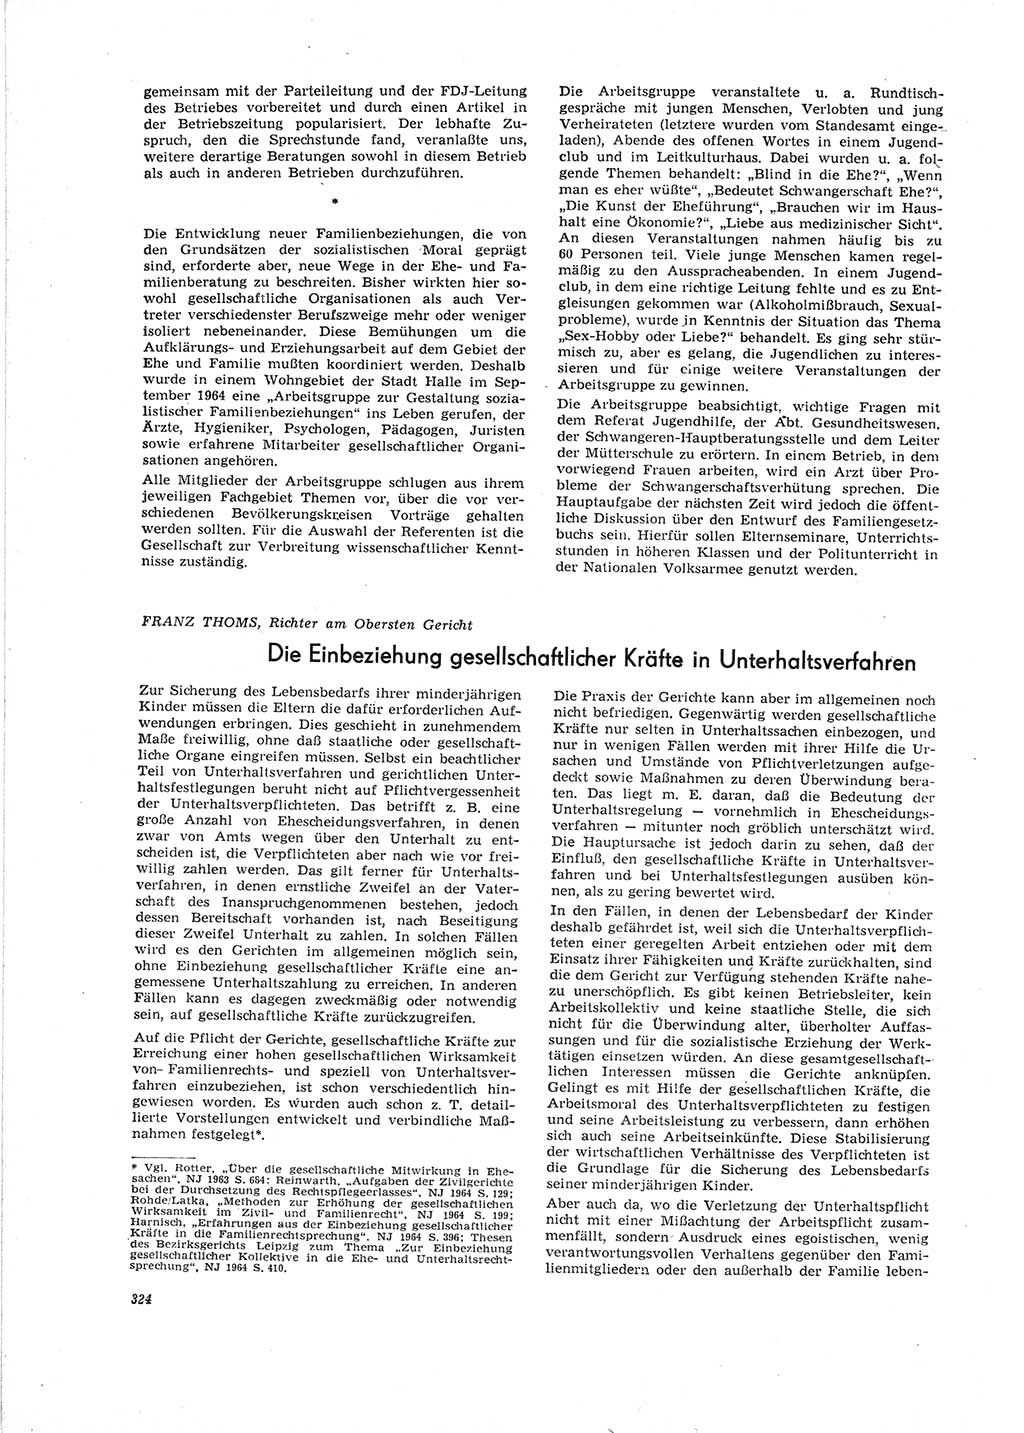 Neue Justiz (NJ), Zeitschrift für Recht und Rechtswissenschaft [Deutsche Demokratische Republik (DDR)], 19. Jahrgang 1965, Seite 324 (NJ DDR 1965, S. 324)